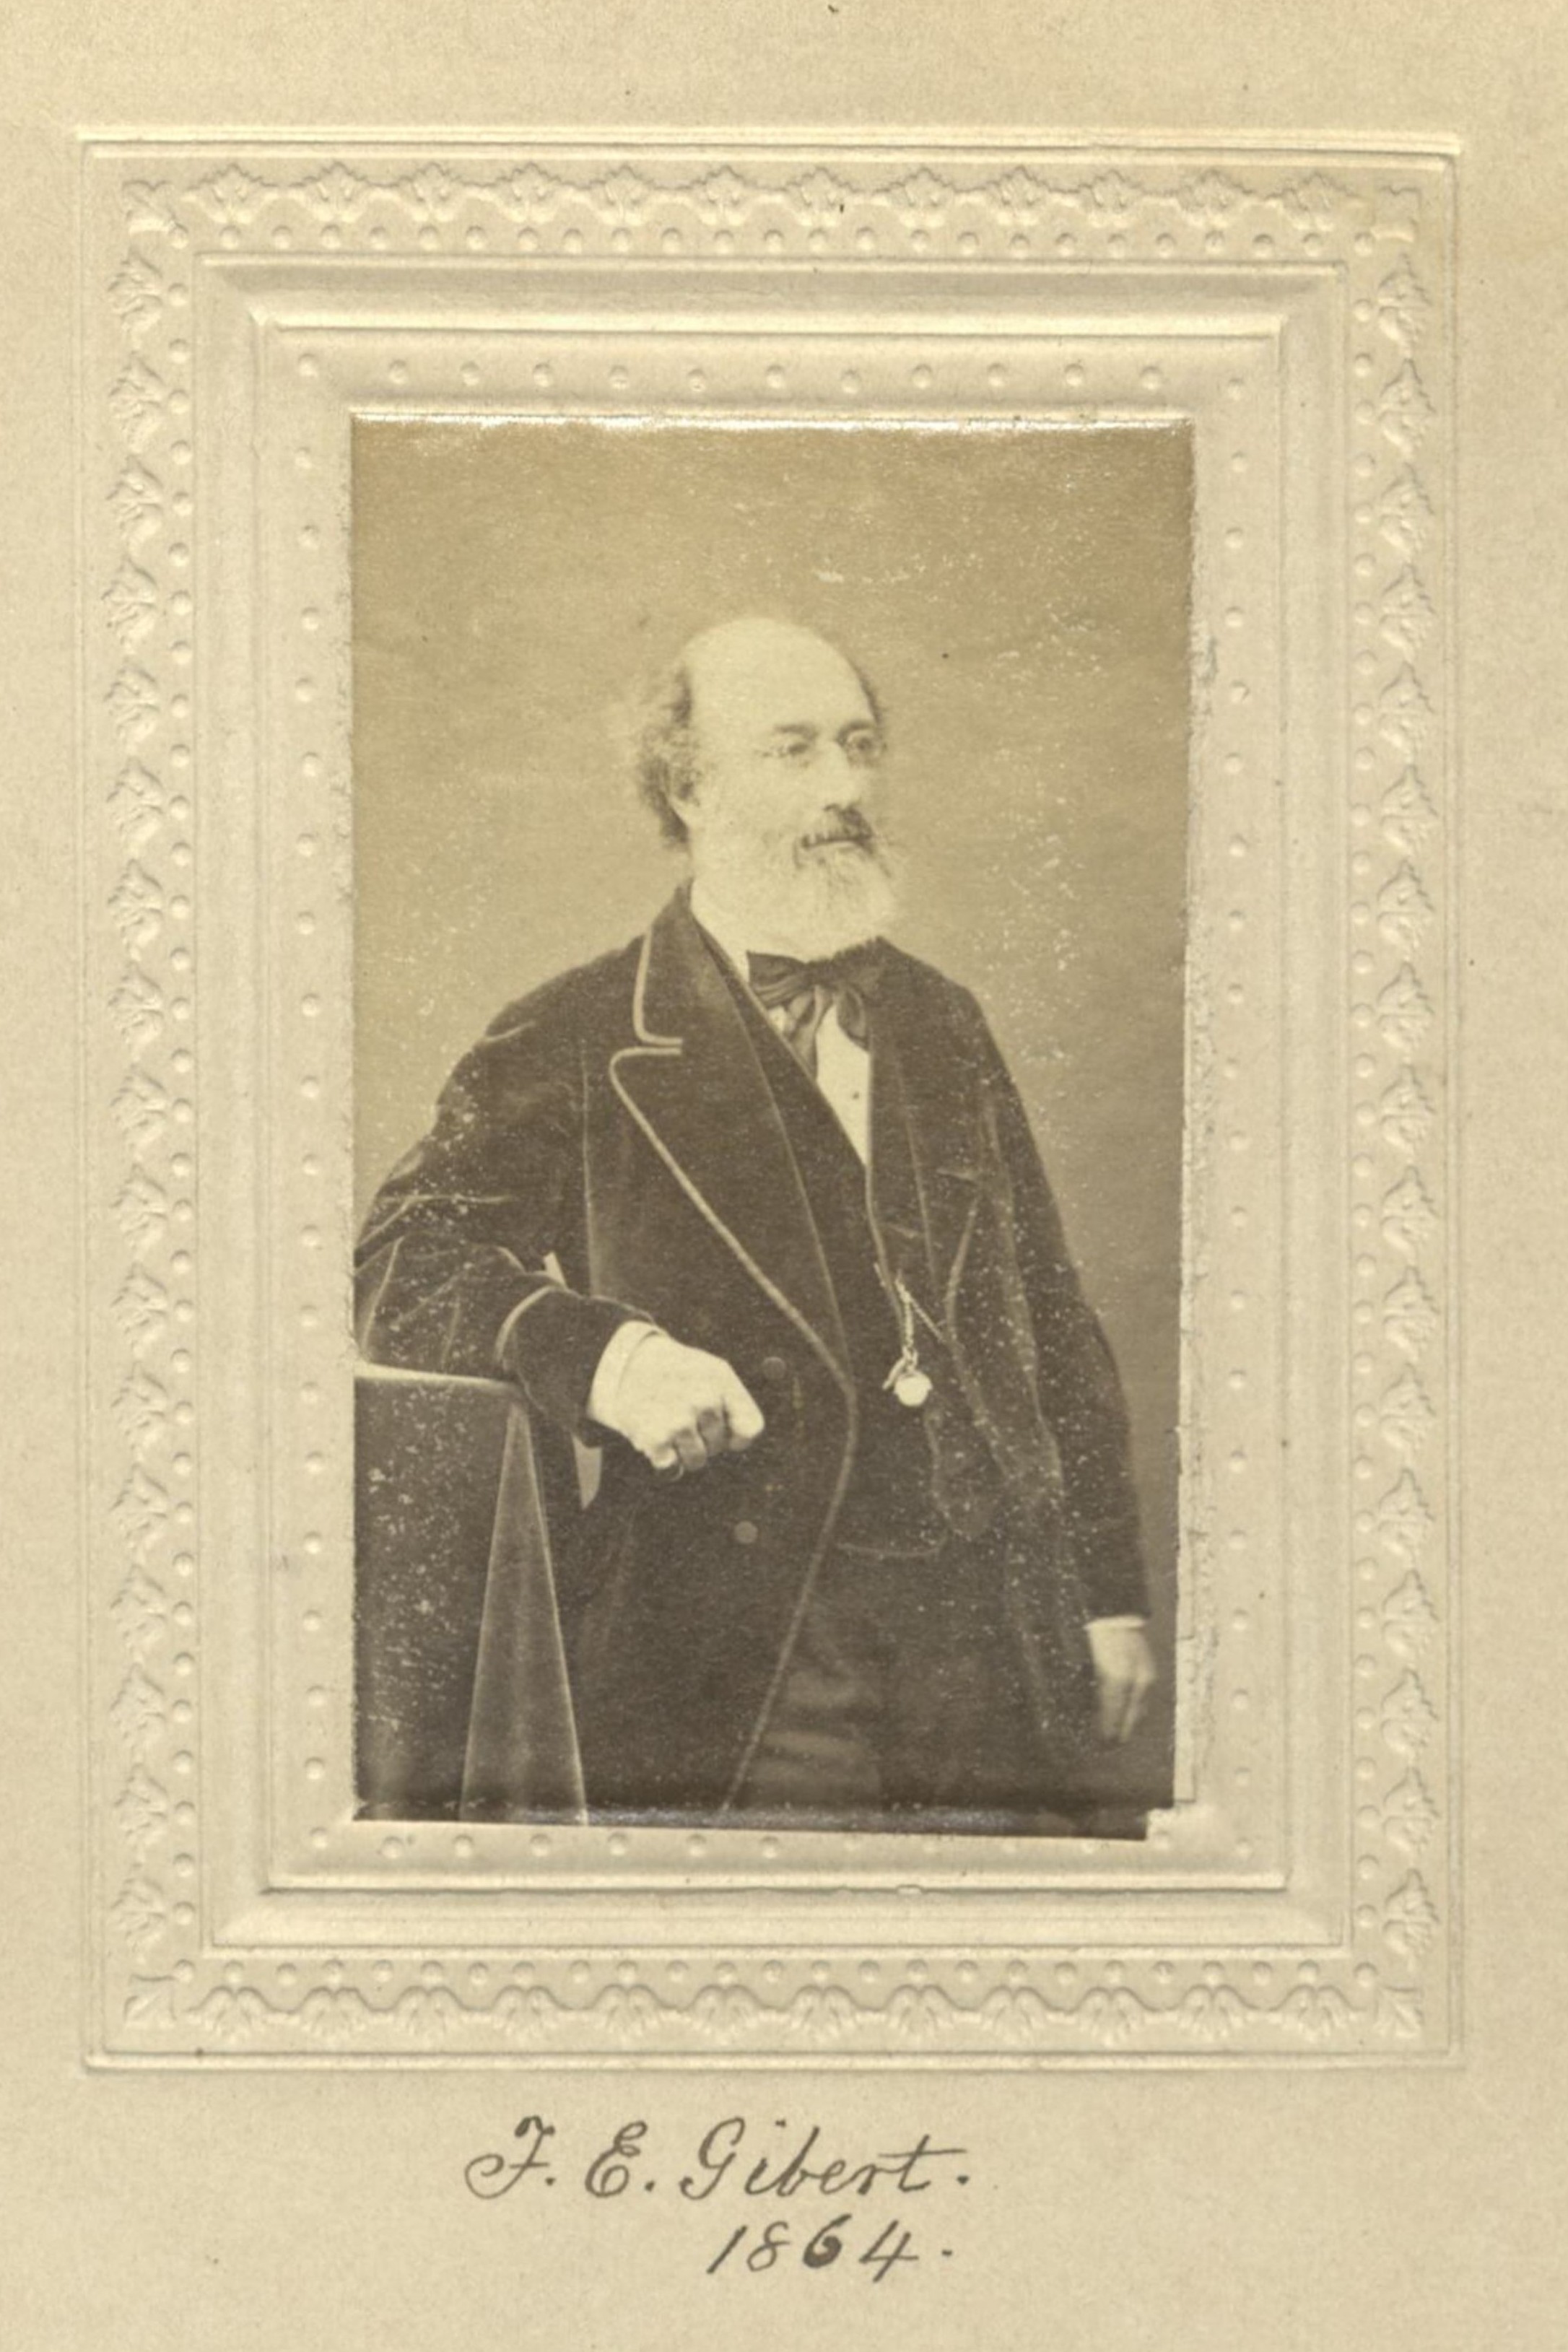 Member portrait of Frederick E. Gibert